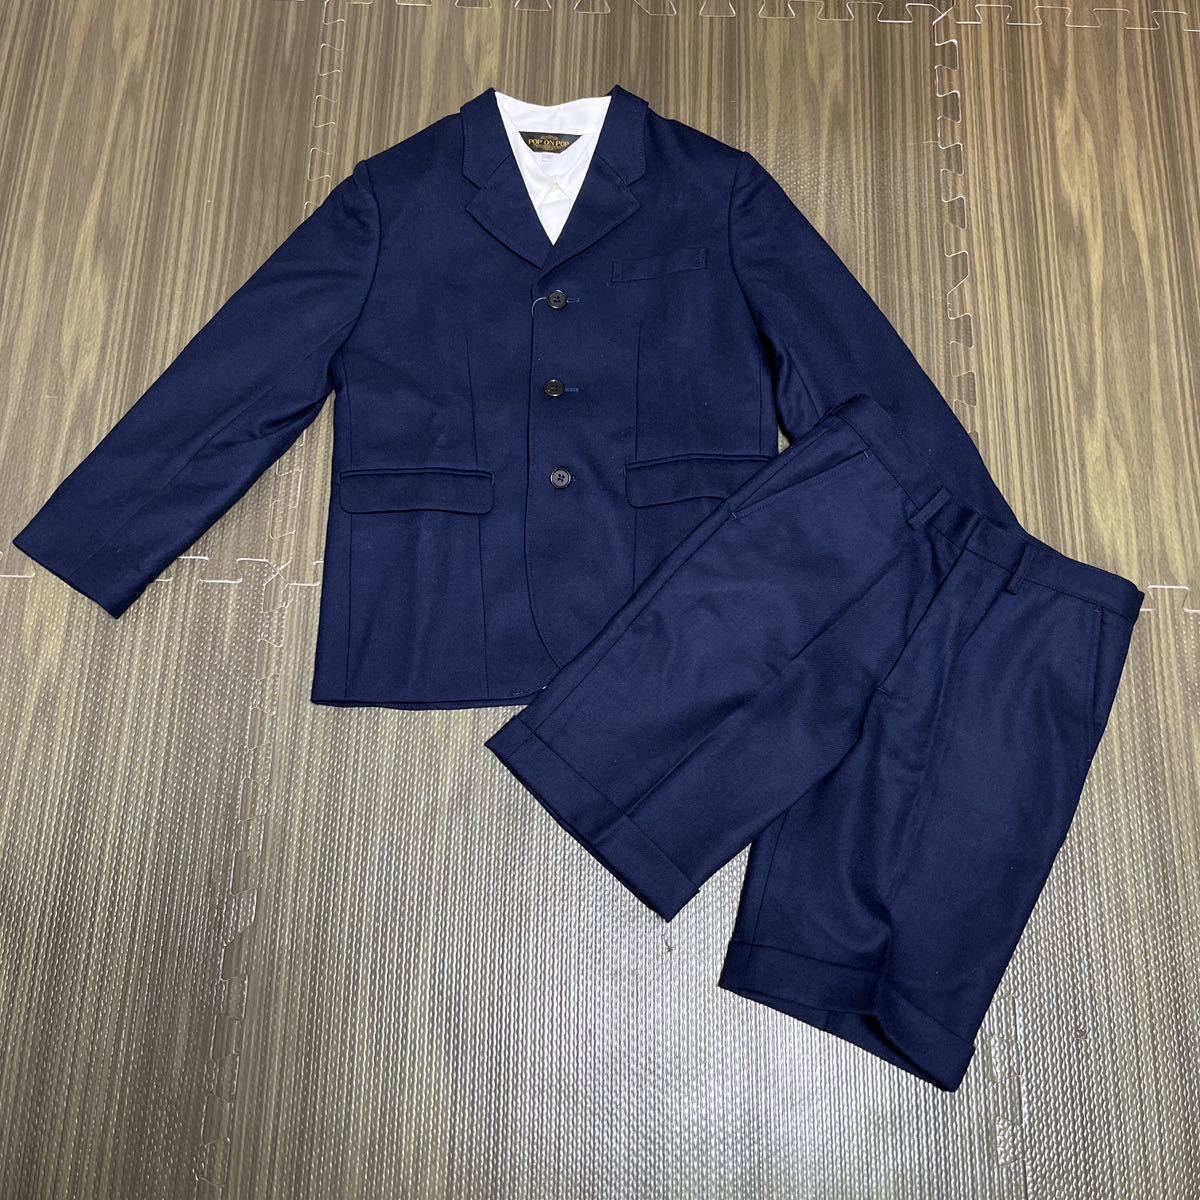 6-6 новый товар Kids формальный костюм 3 пункт выставить церемония темно-синий tailored jacket + шорты + белый рубашка 130.. тип входить . тип 